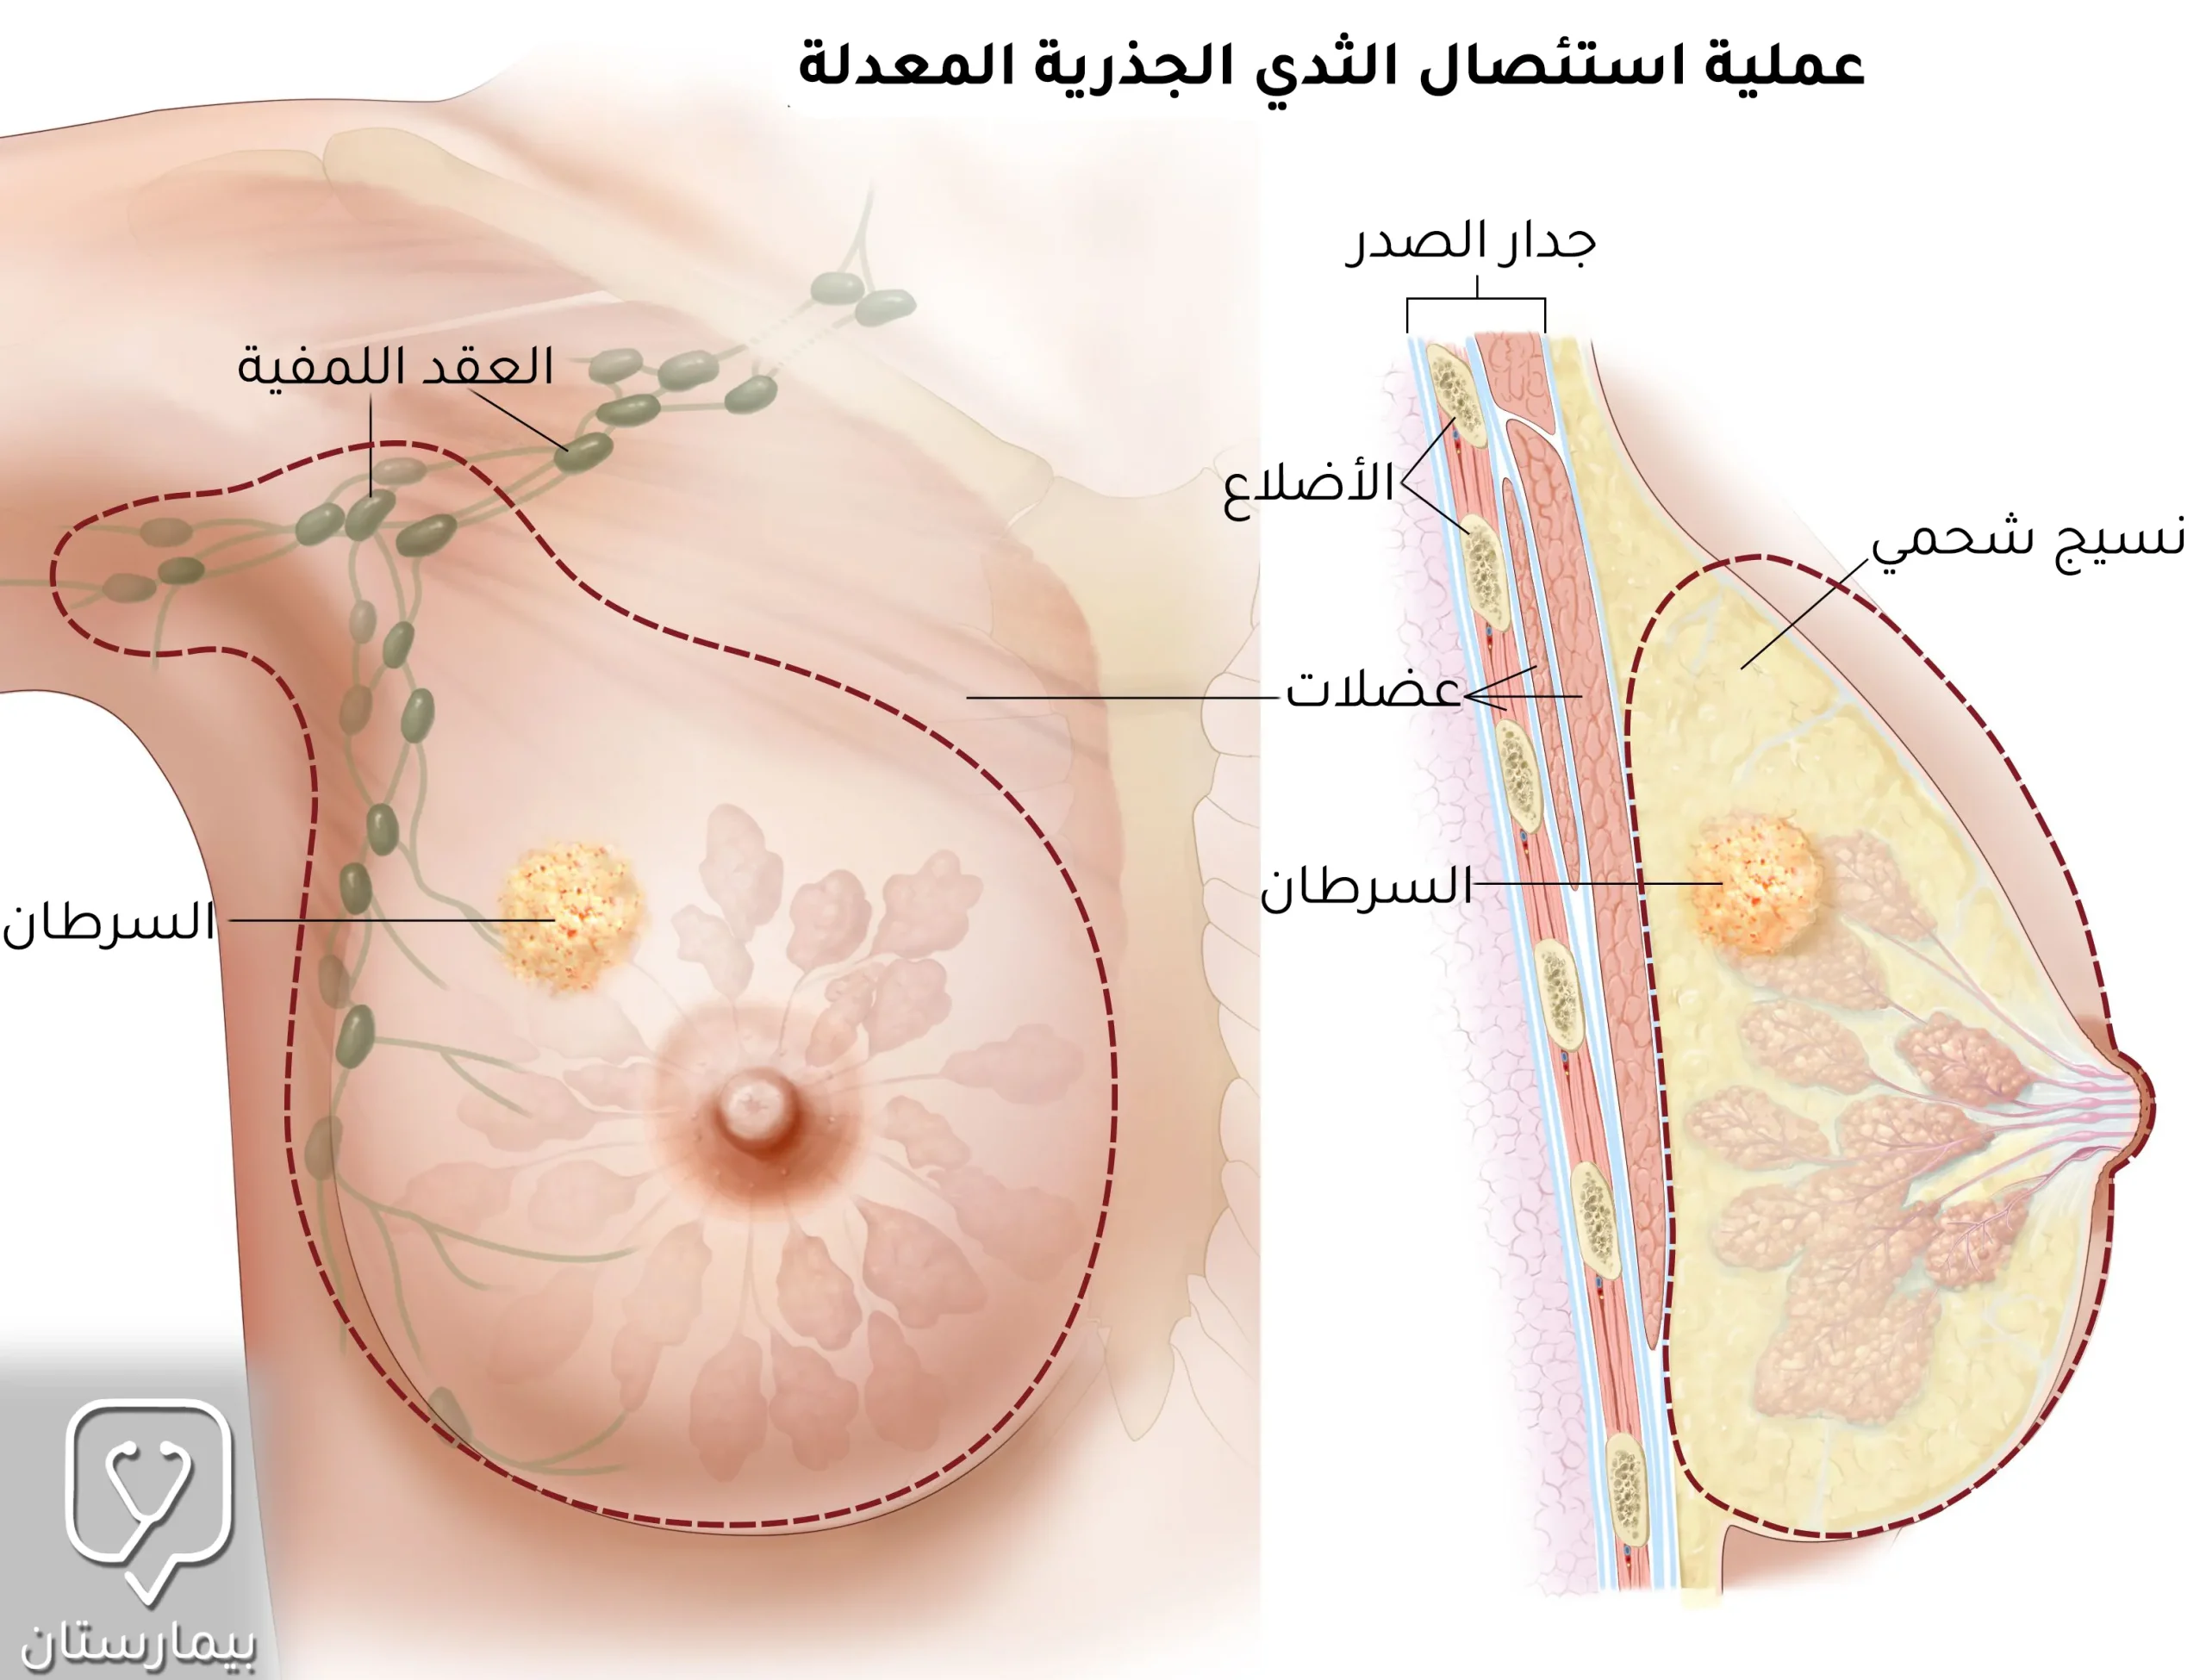 عملية استئصال الثدي الجذرية المعدلة